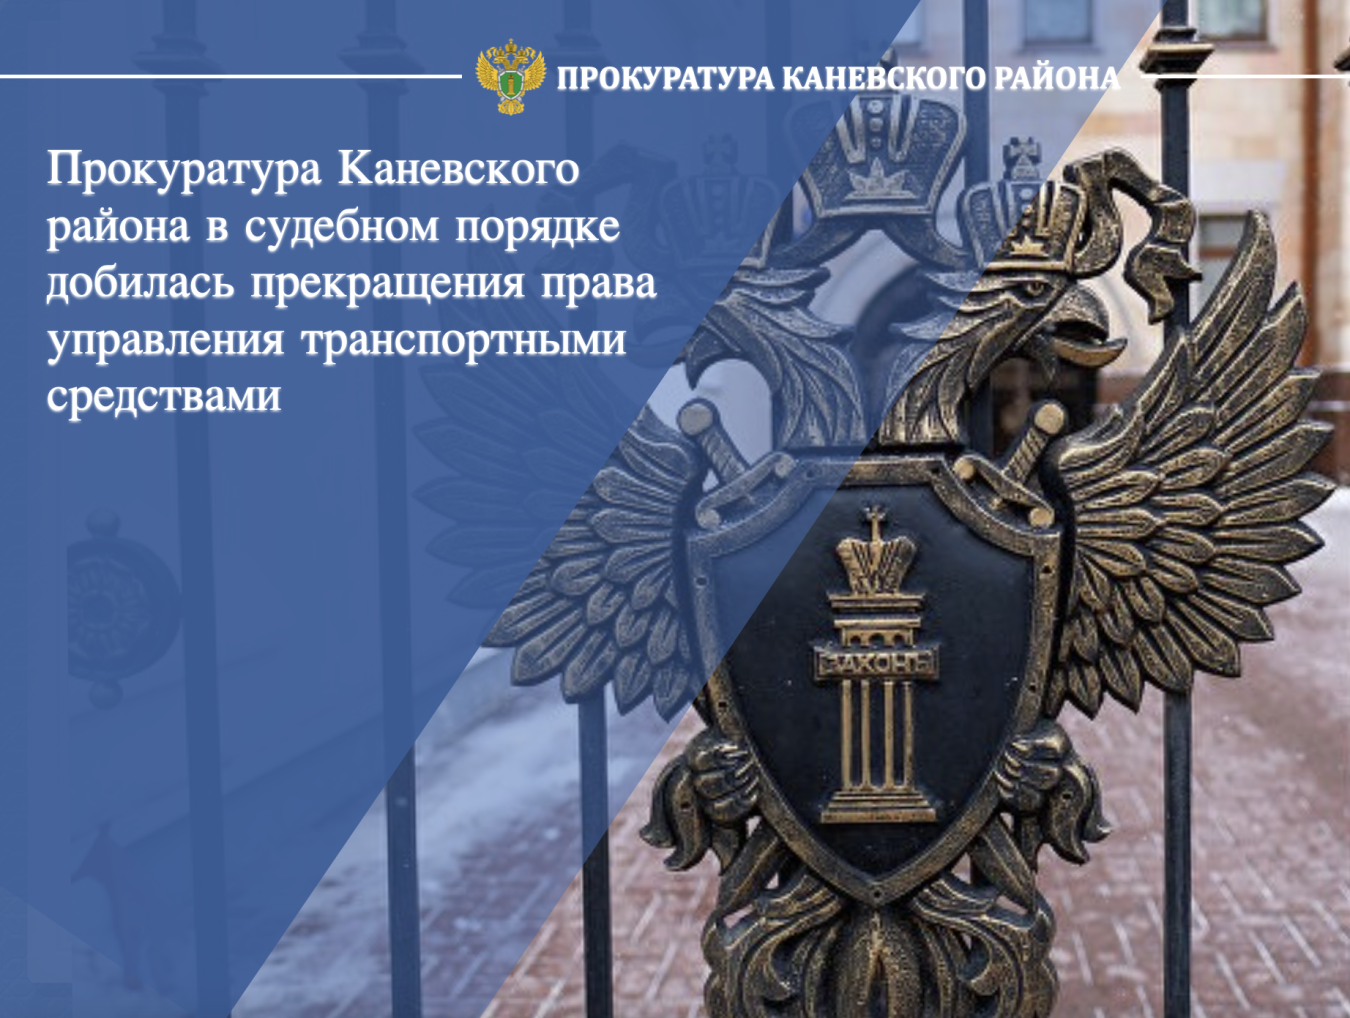 Прокуратура Каневского района в судебном порядке добилась прекращения права управления транспортными средствами